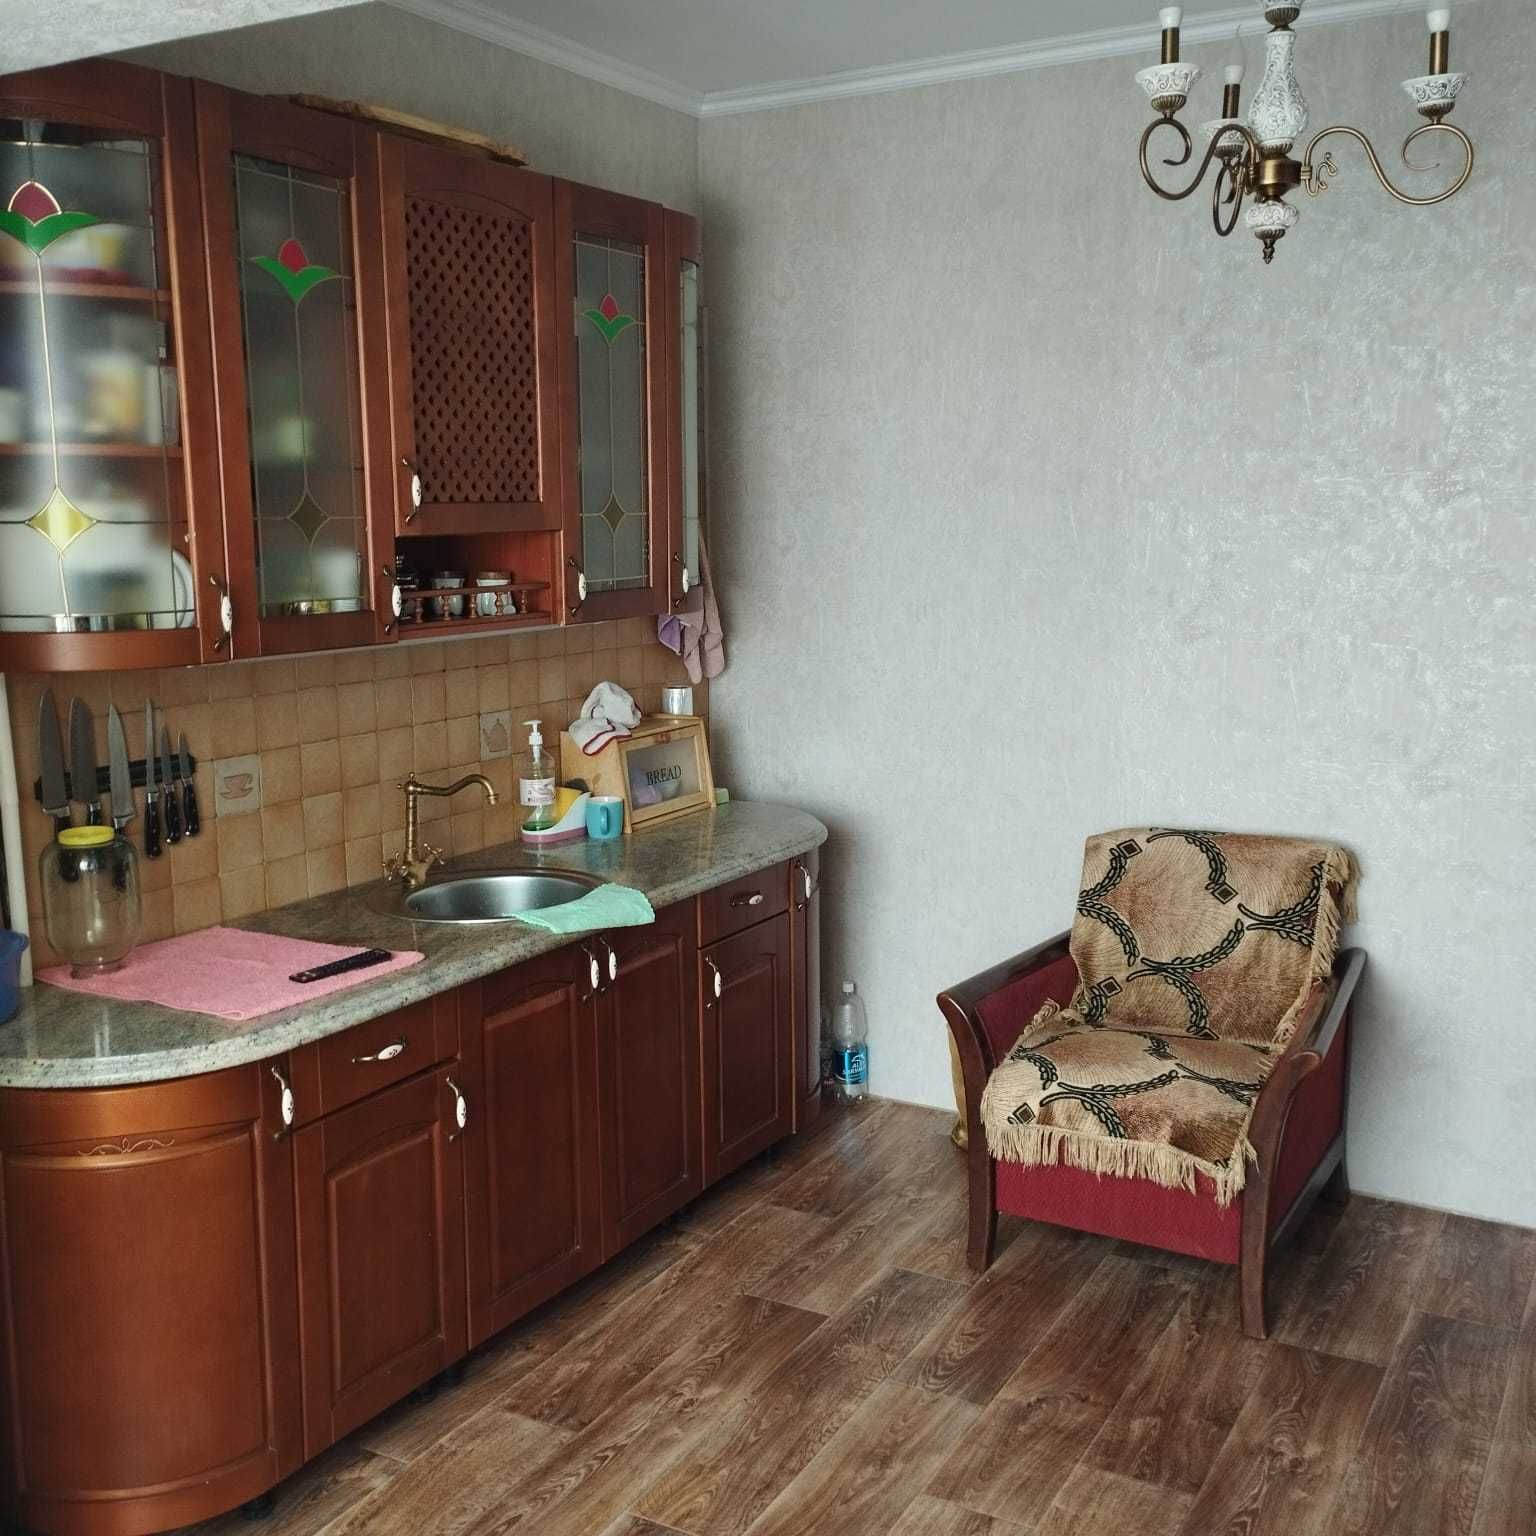 Продам трехкомнатную квартиру в р-не перес.улиц Кисловодская-Левского.